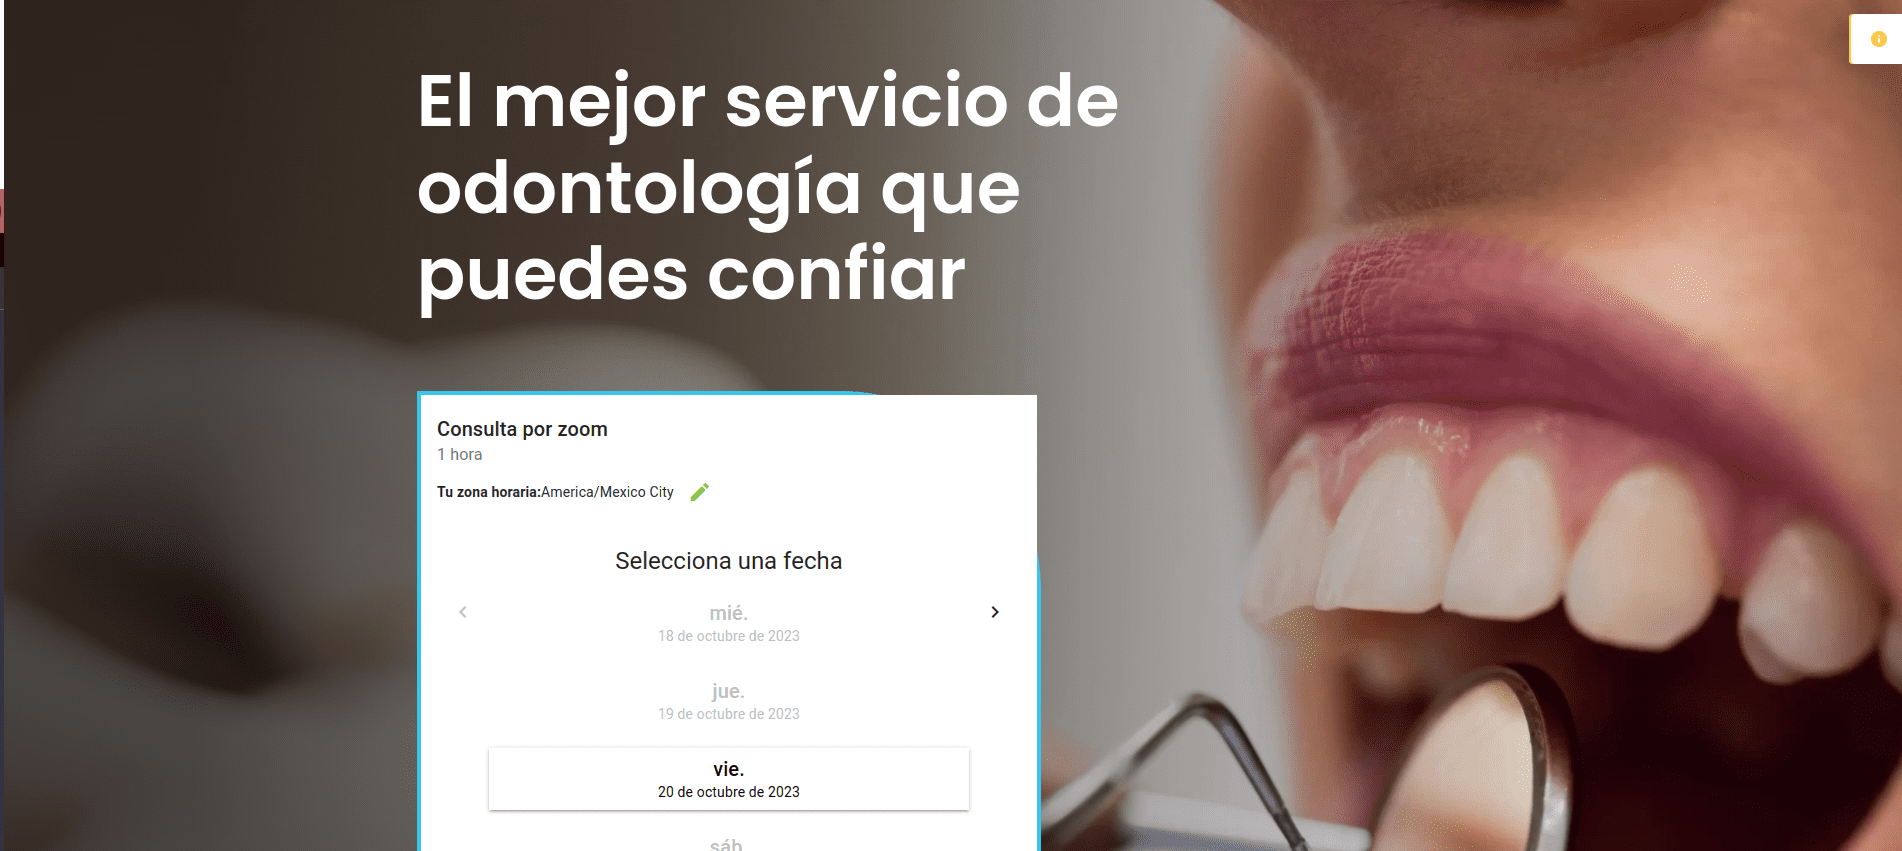 Servicios de odontología ofrecidos en miespecialista.com